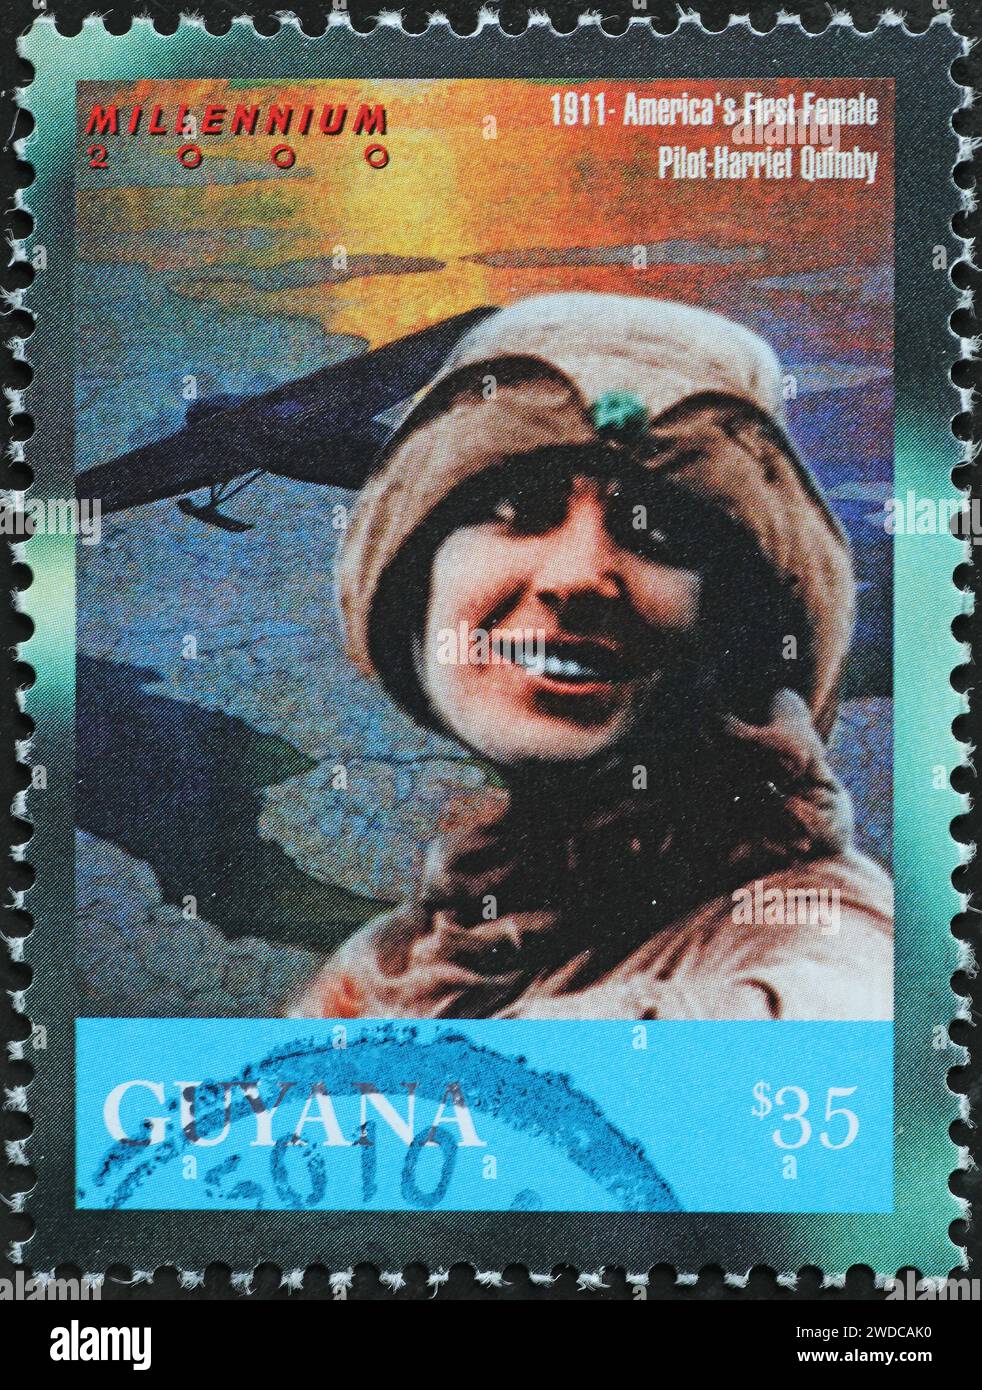 La prima donna pilota d'America nel 1911 sul francobollo Foto Stock